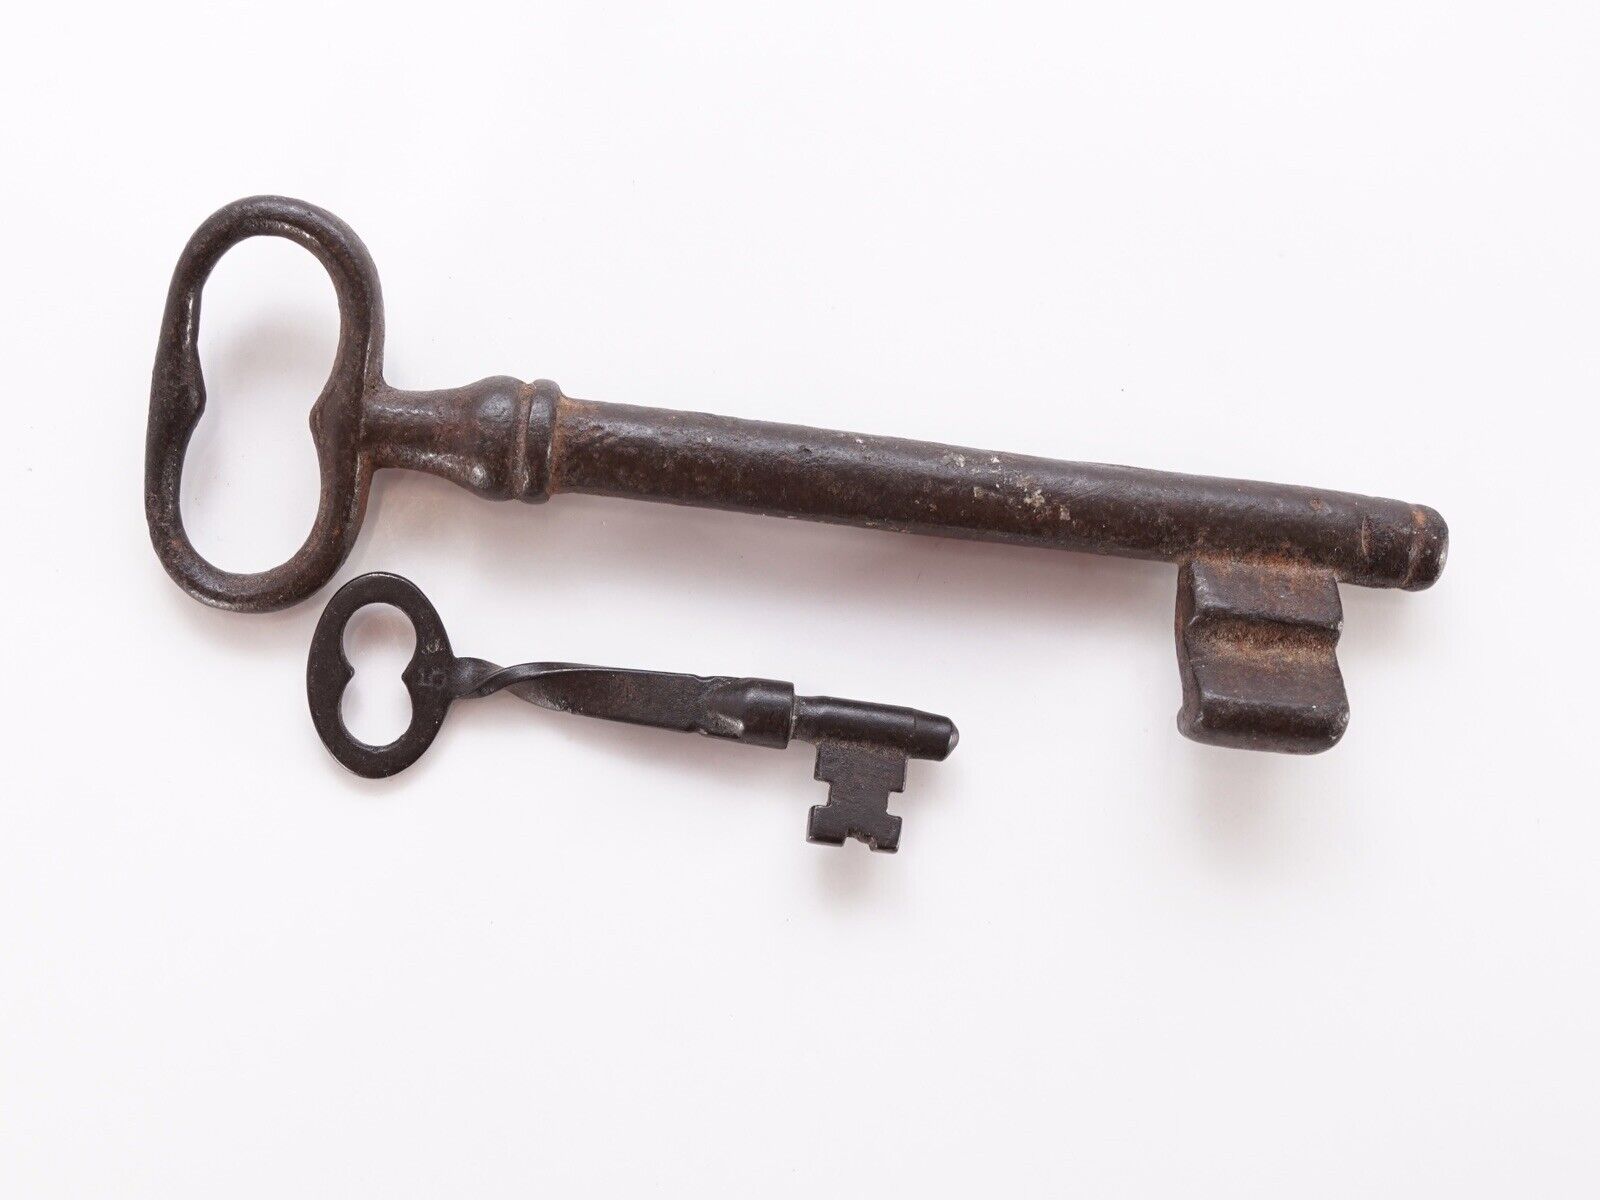 2 Vintage Antique Skeleton Keys Solid Core Metal Decorative Key